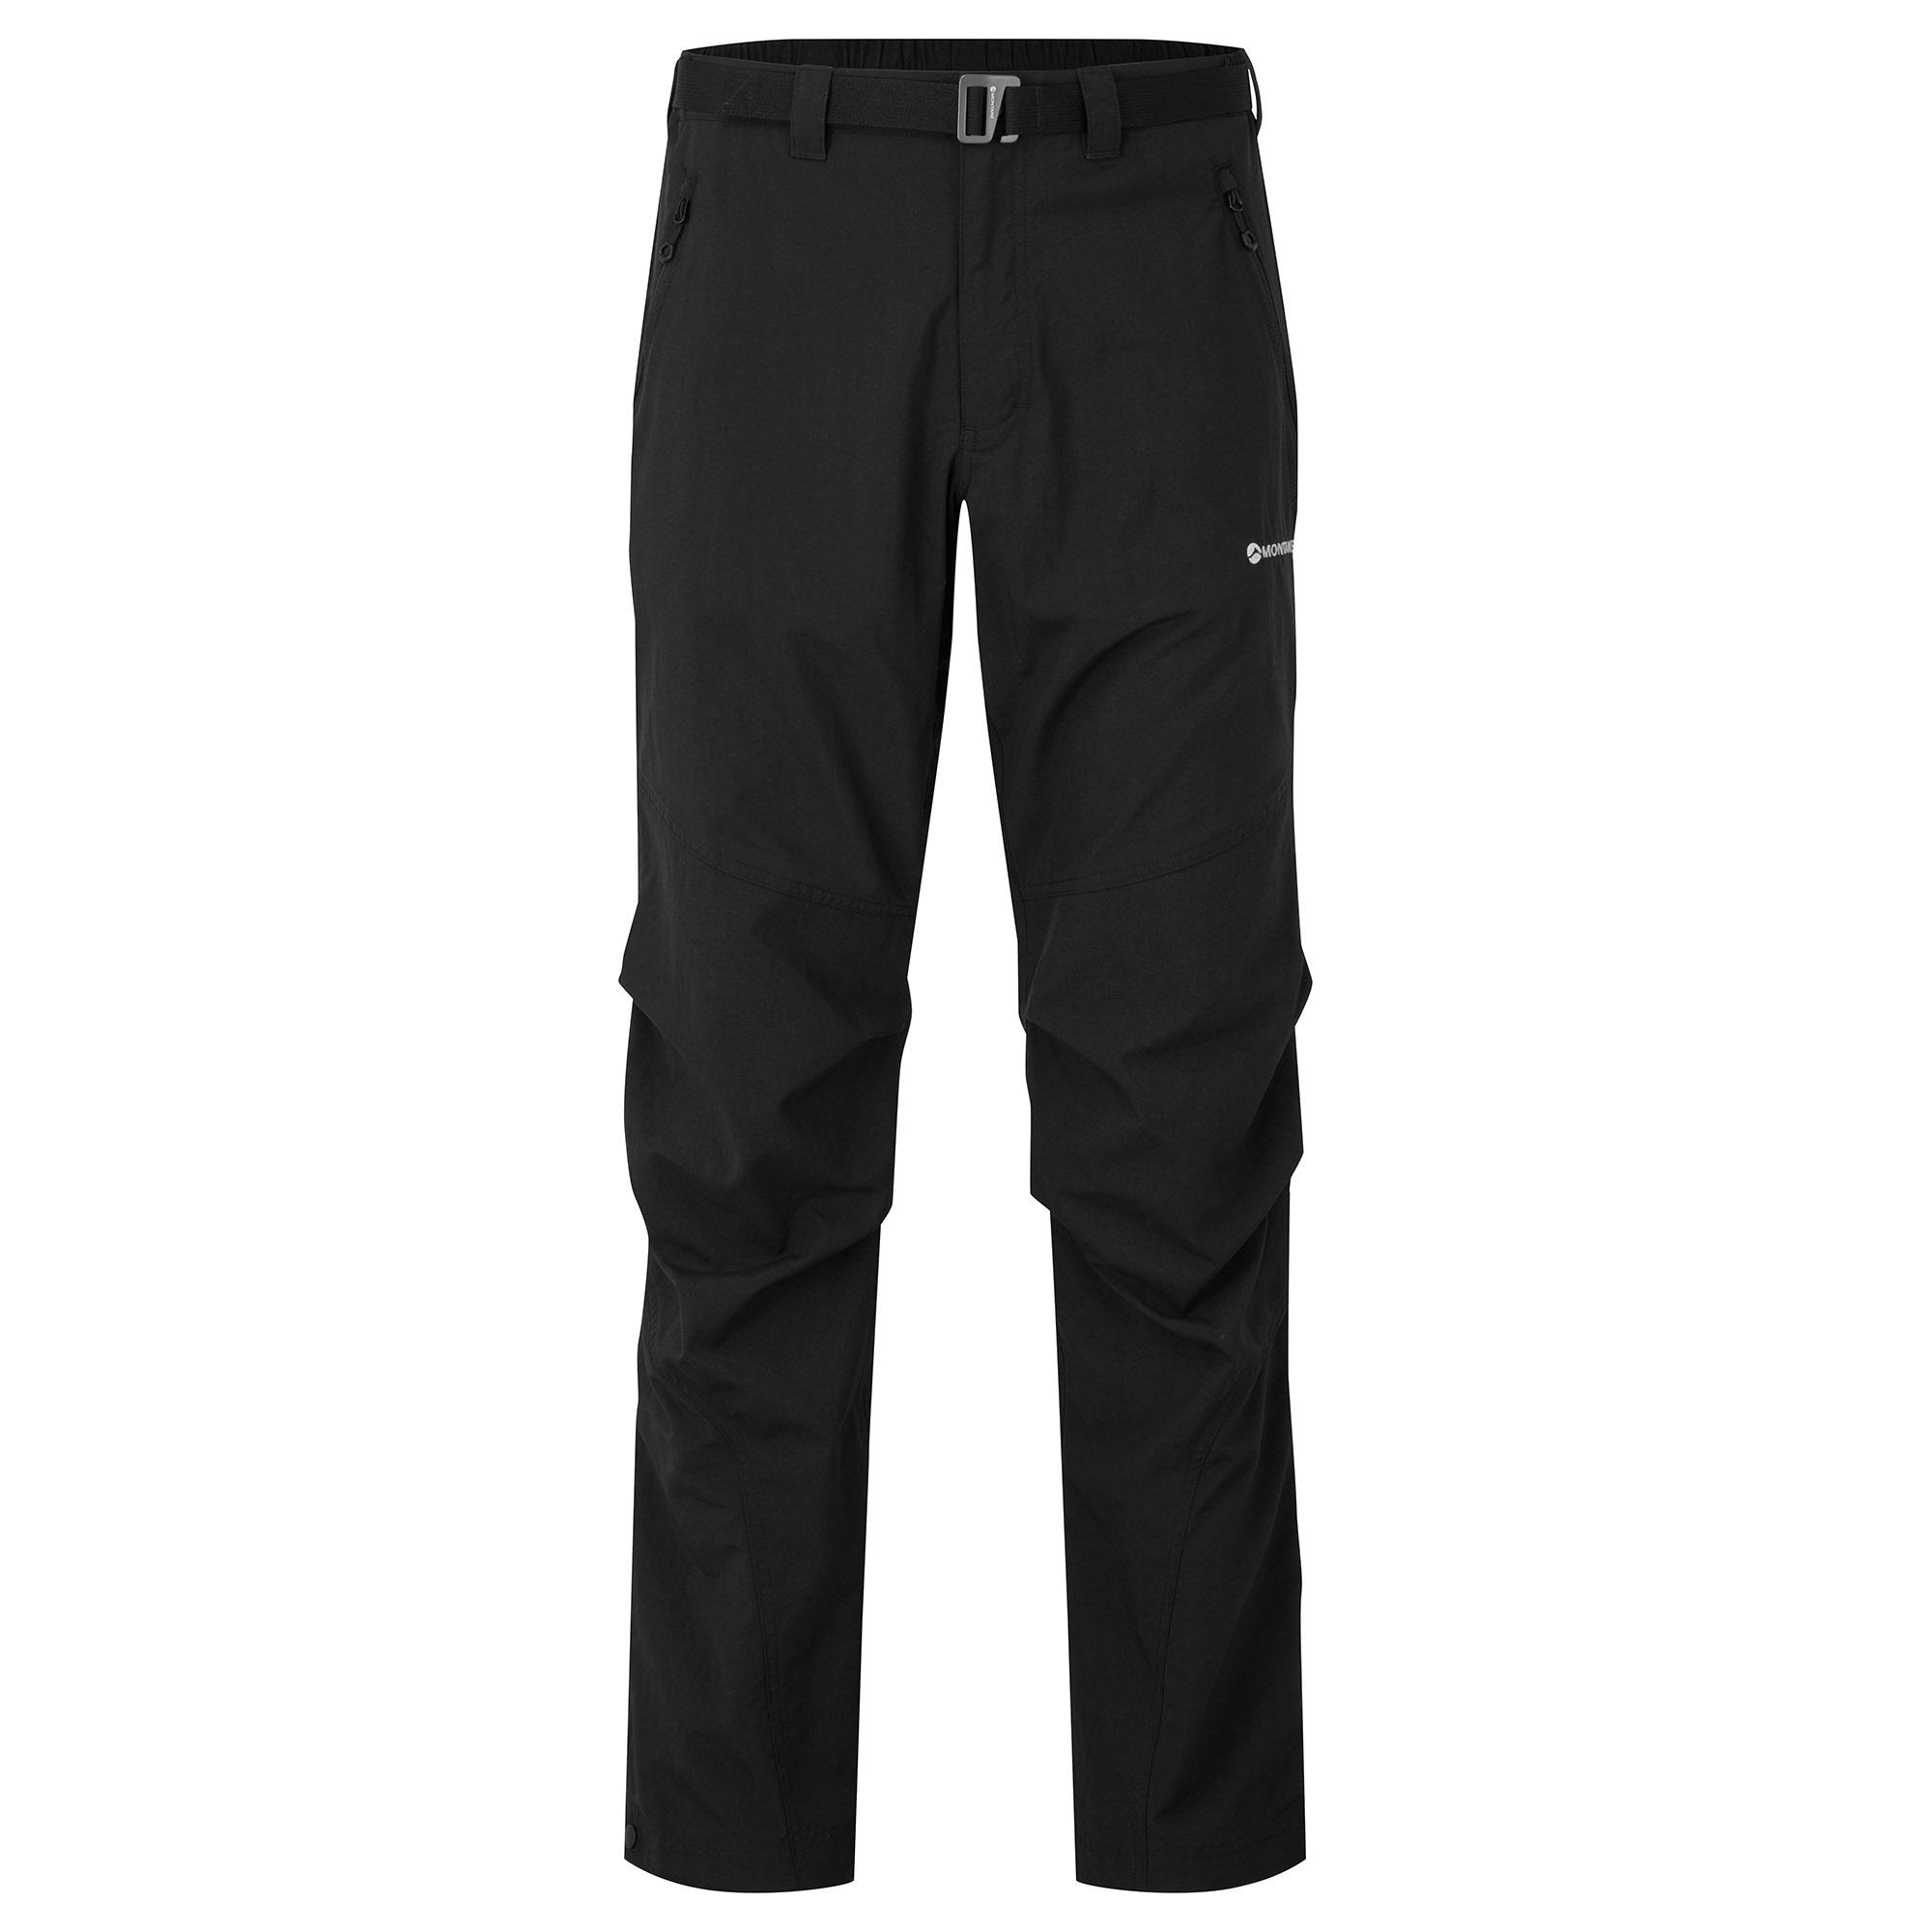 Montane pánské softshellové kalhoty Terra Pants - Zkrácené Nohavice Barva: black, Velikost: 32